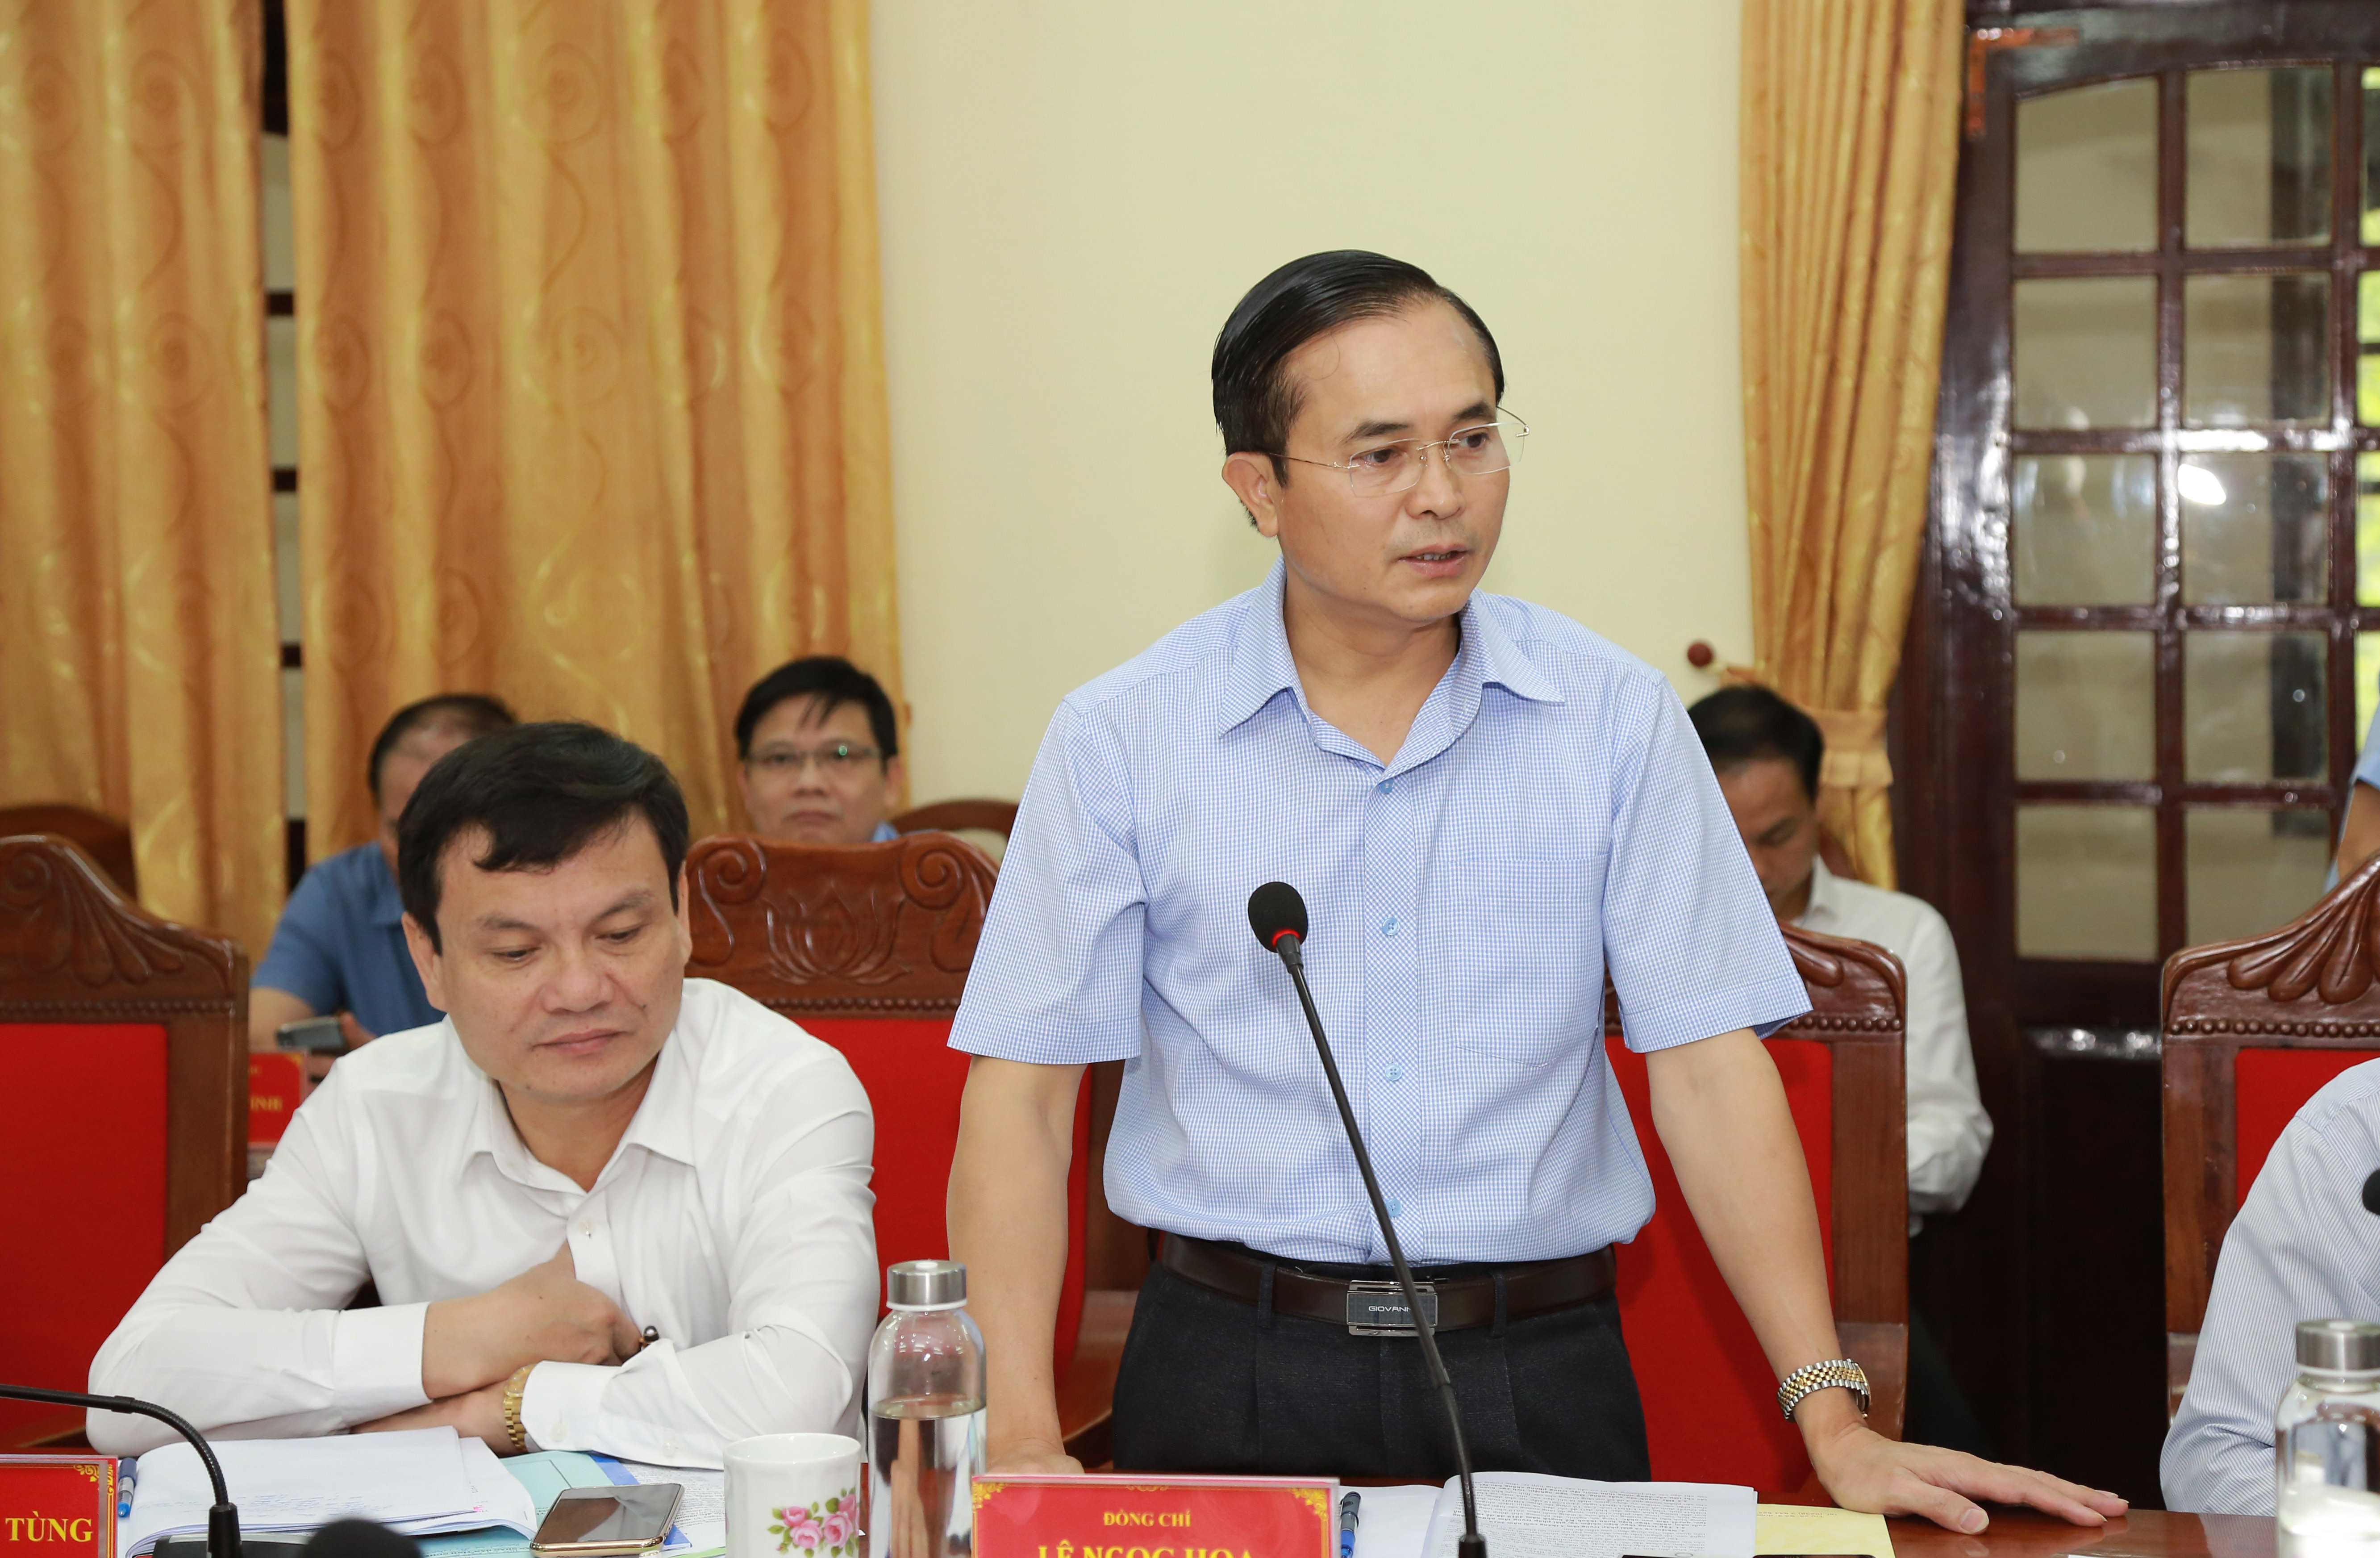 Đồng chí Lê Ngọc Hoa - Phó Chủ tịch UBND tỉnh làm rõ thêm những kiến nghị của lãnh đạo UBND thành phố Vinh. Ảnh: Đào Tuấn